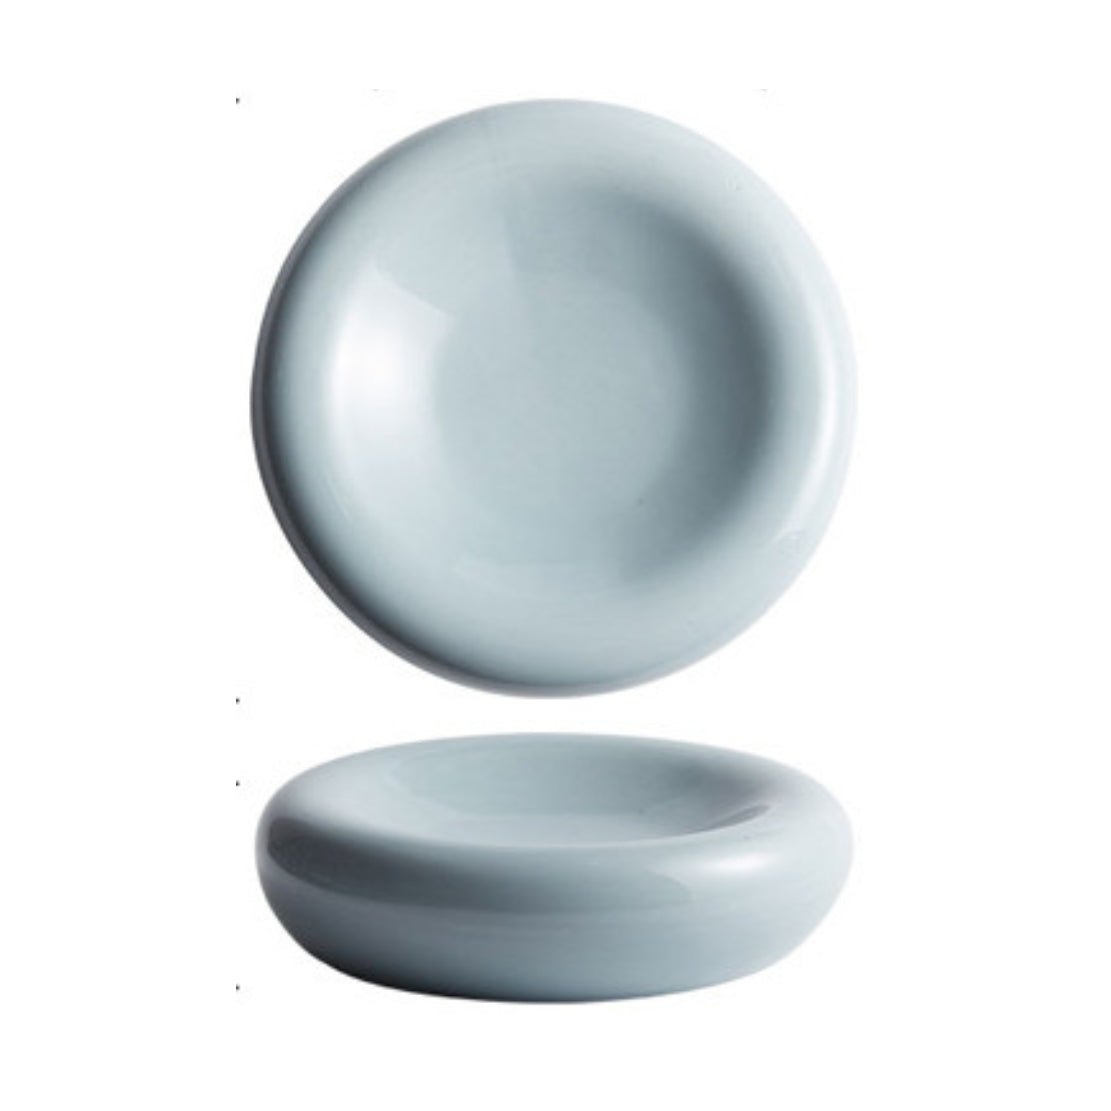 Blue, chunky ceramic orb plate